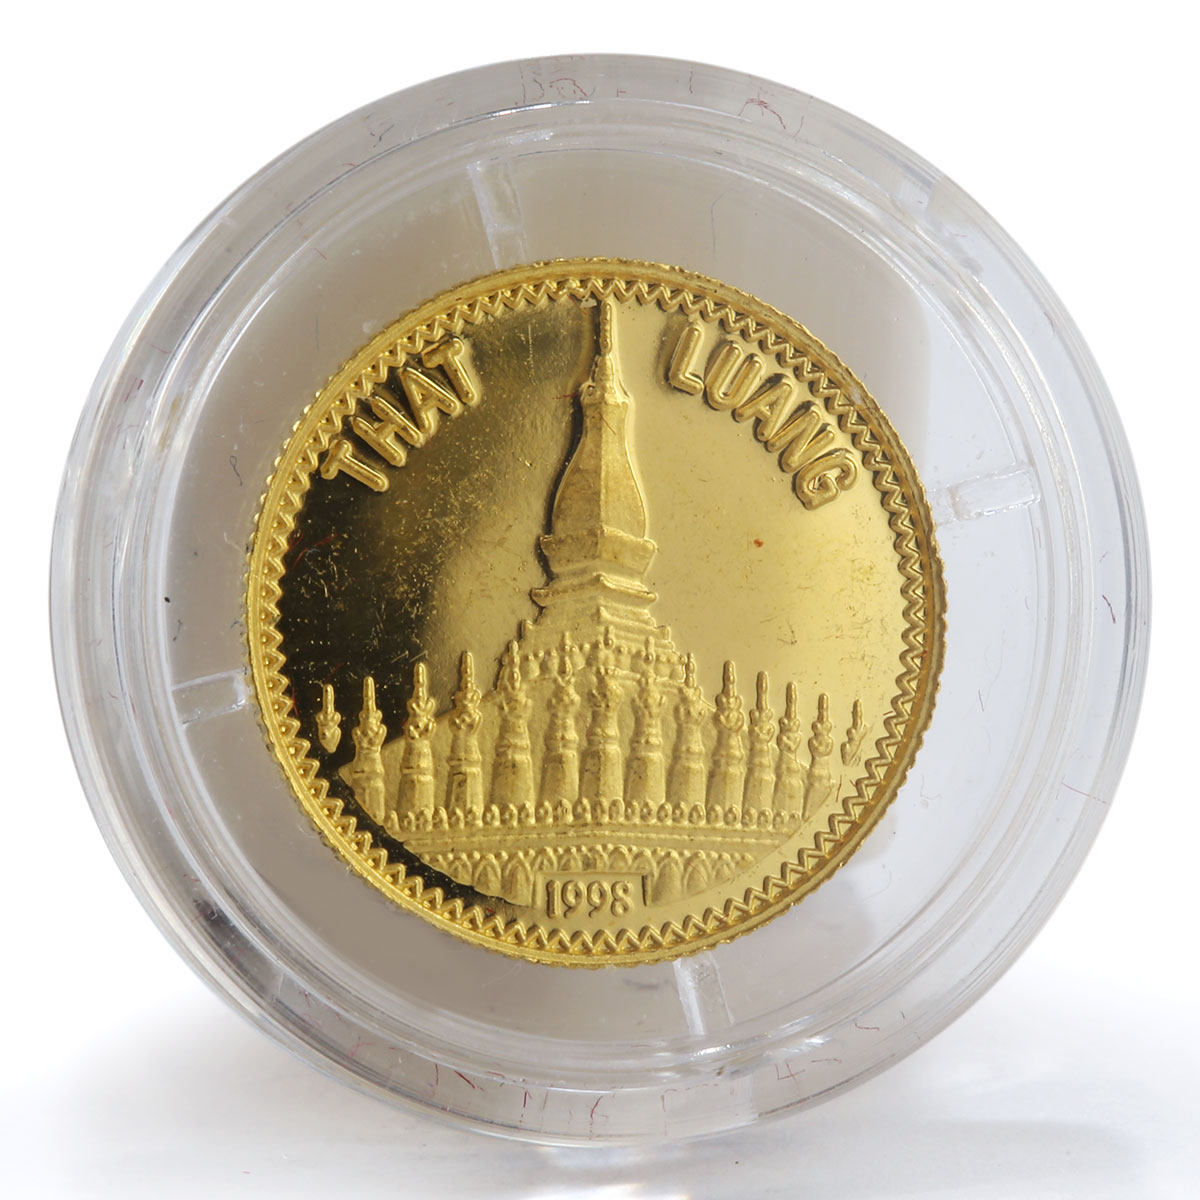 Laos 2000 kip That Luang gold coin 1998